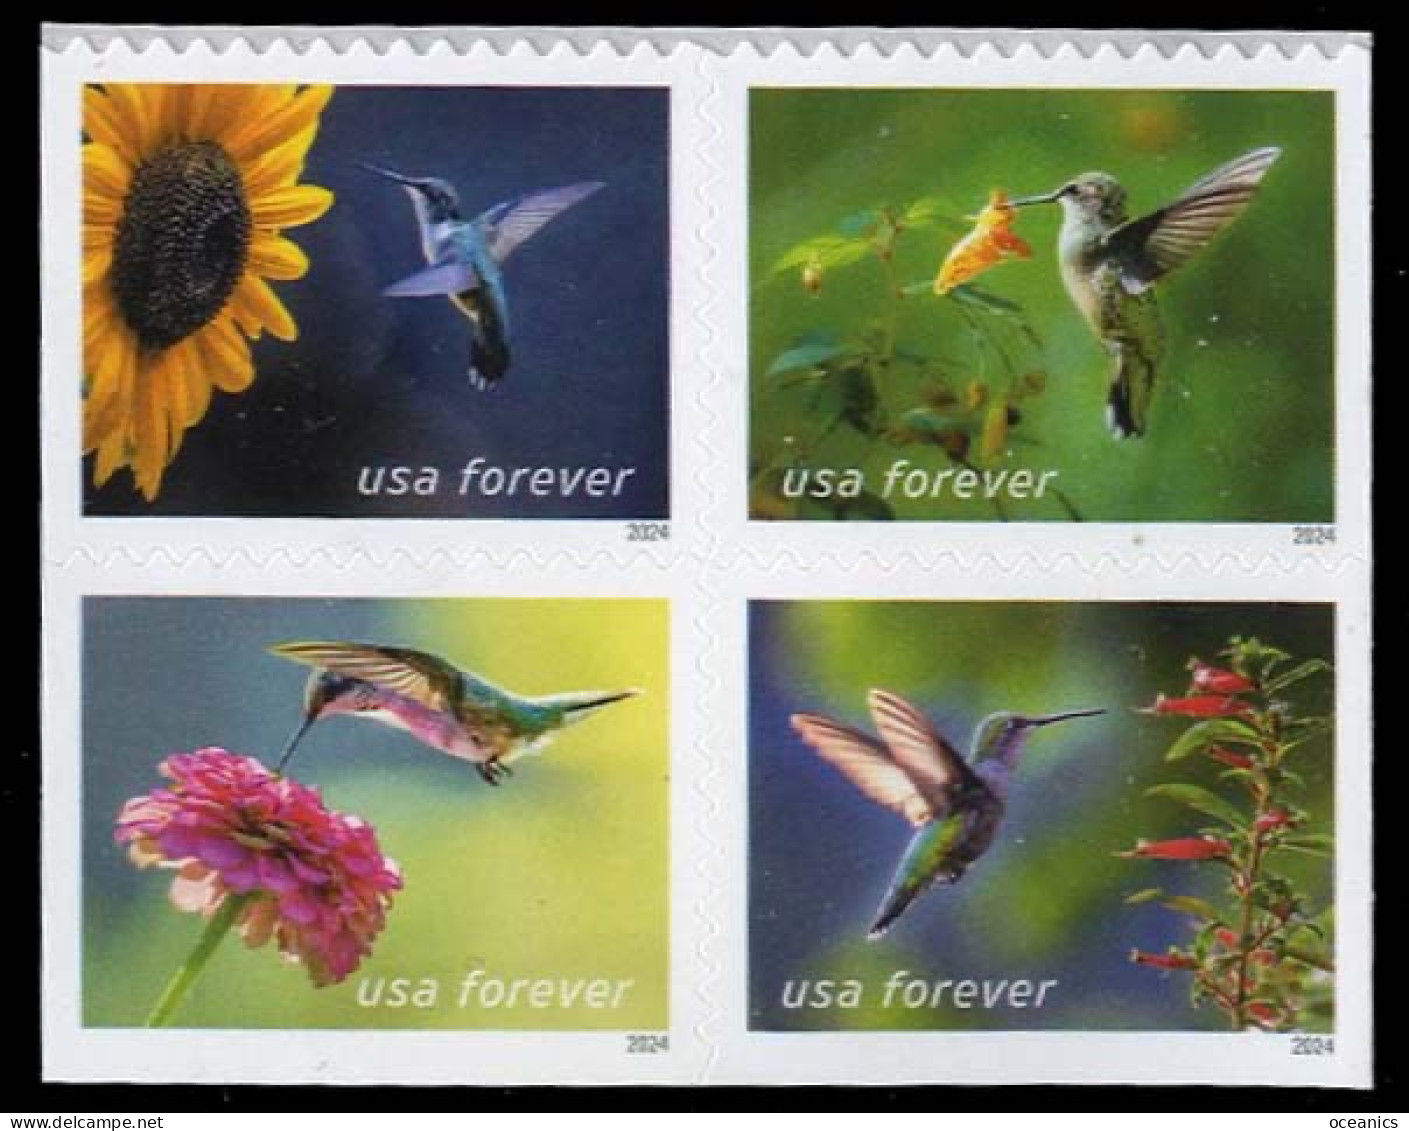 Etats-Unis / United States (Scott No.5848a - Garden Delights Forever Stamps) [**] Bloc Of 4 - Ongebruikt